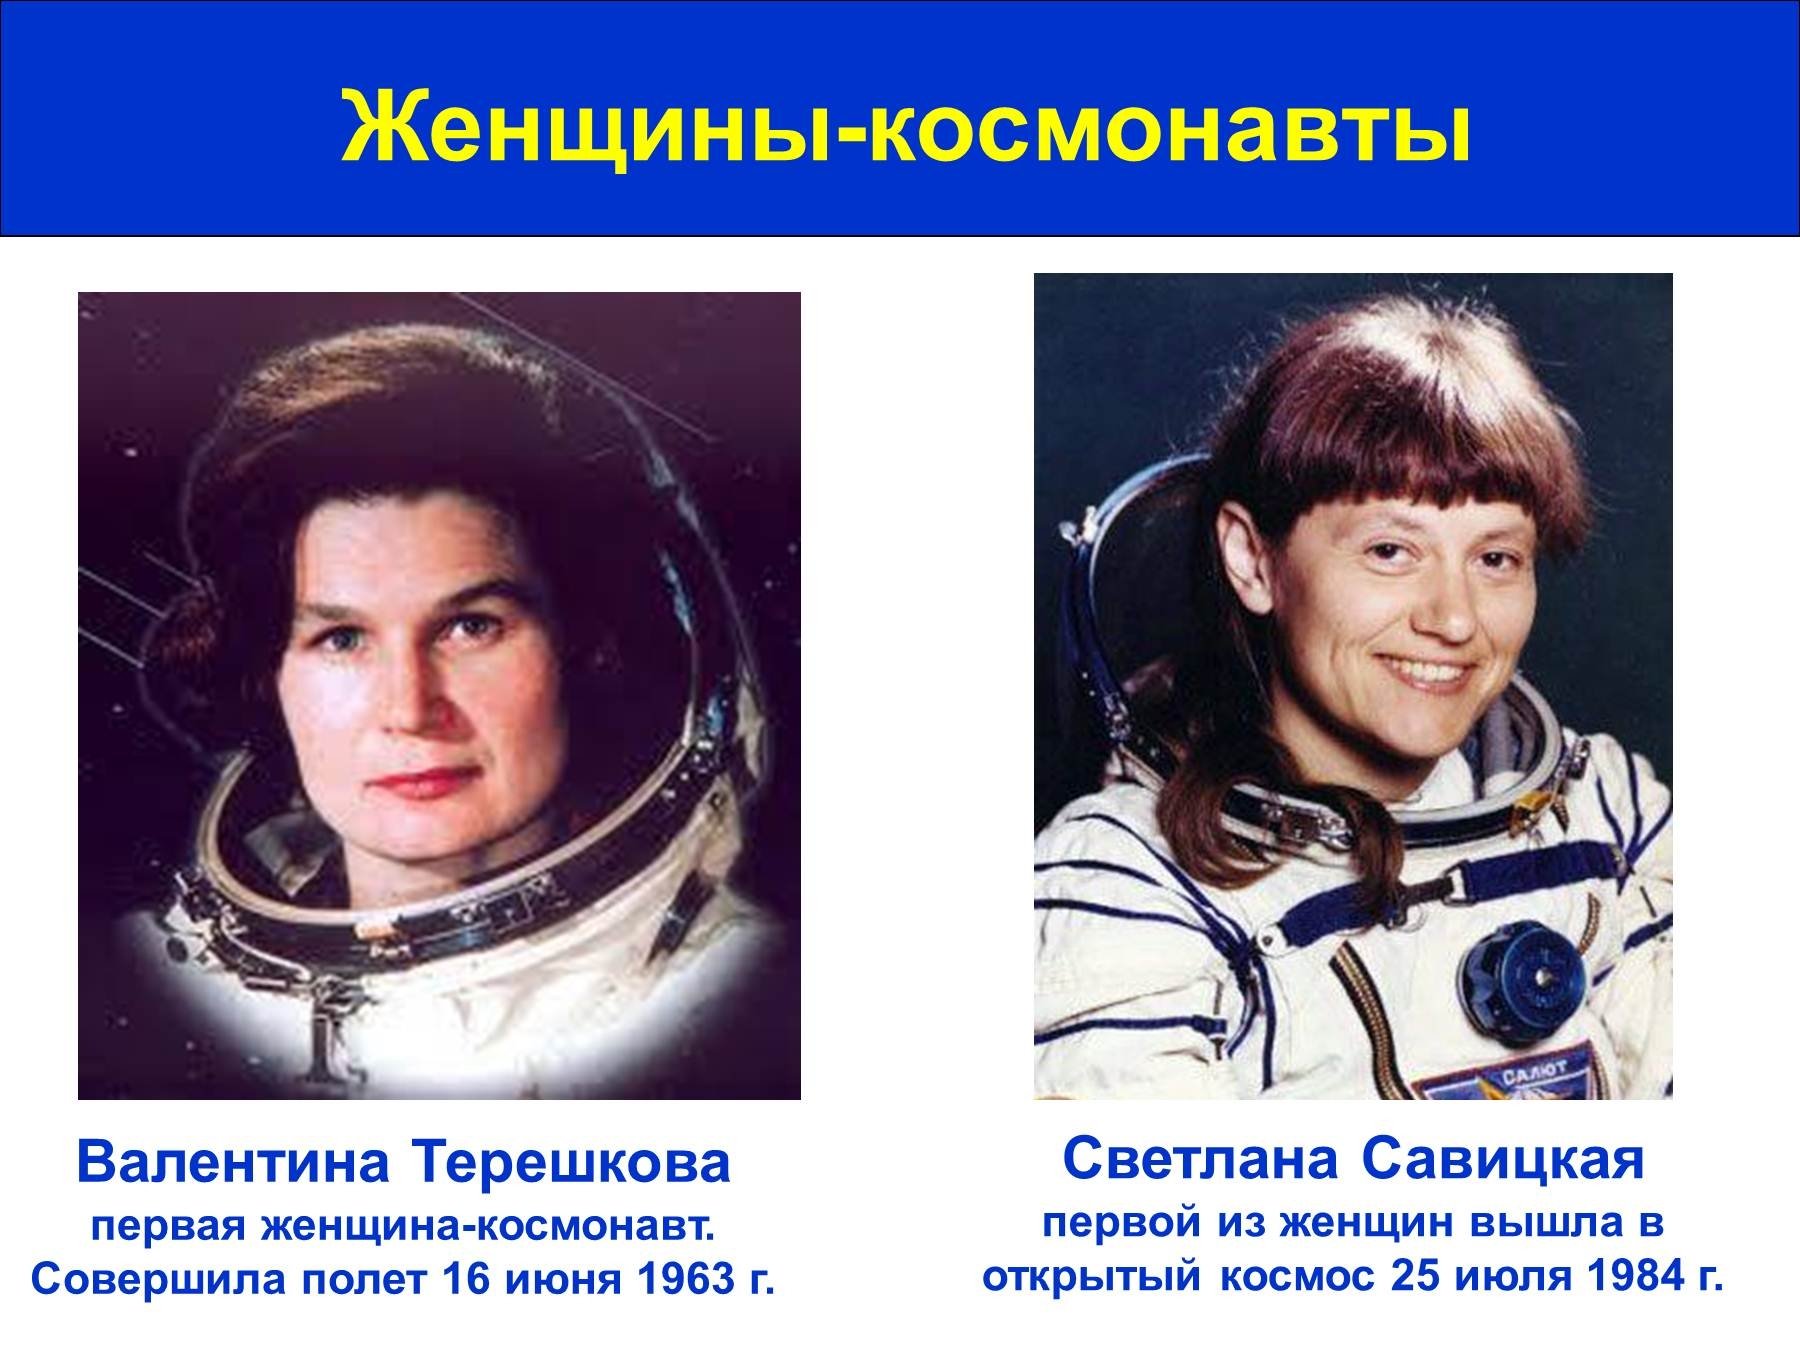 Напиши кто первым побывал в космосе. Восток 6 Терешкова. Восток-6 космический корабль Терешковой.